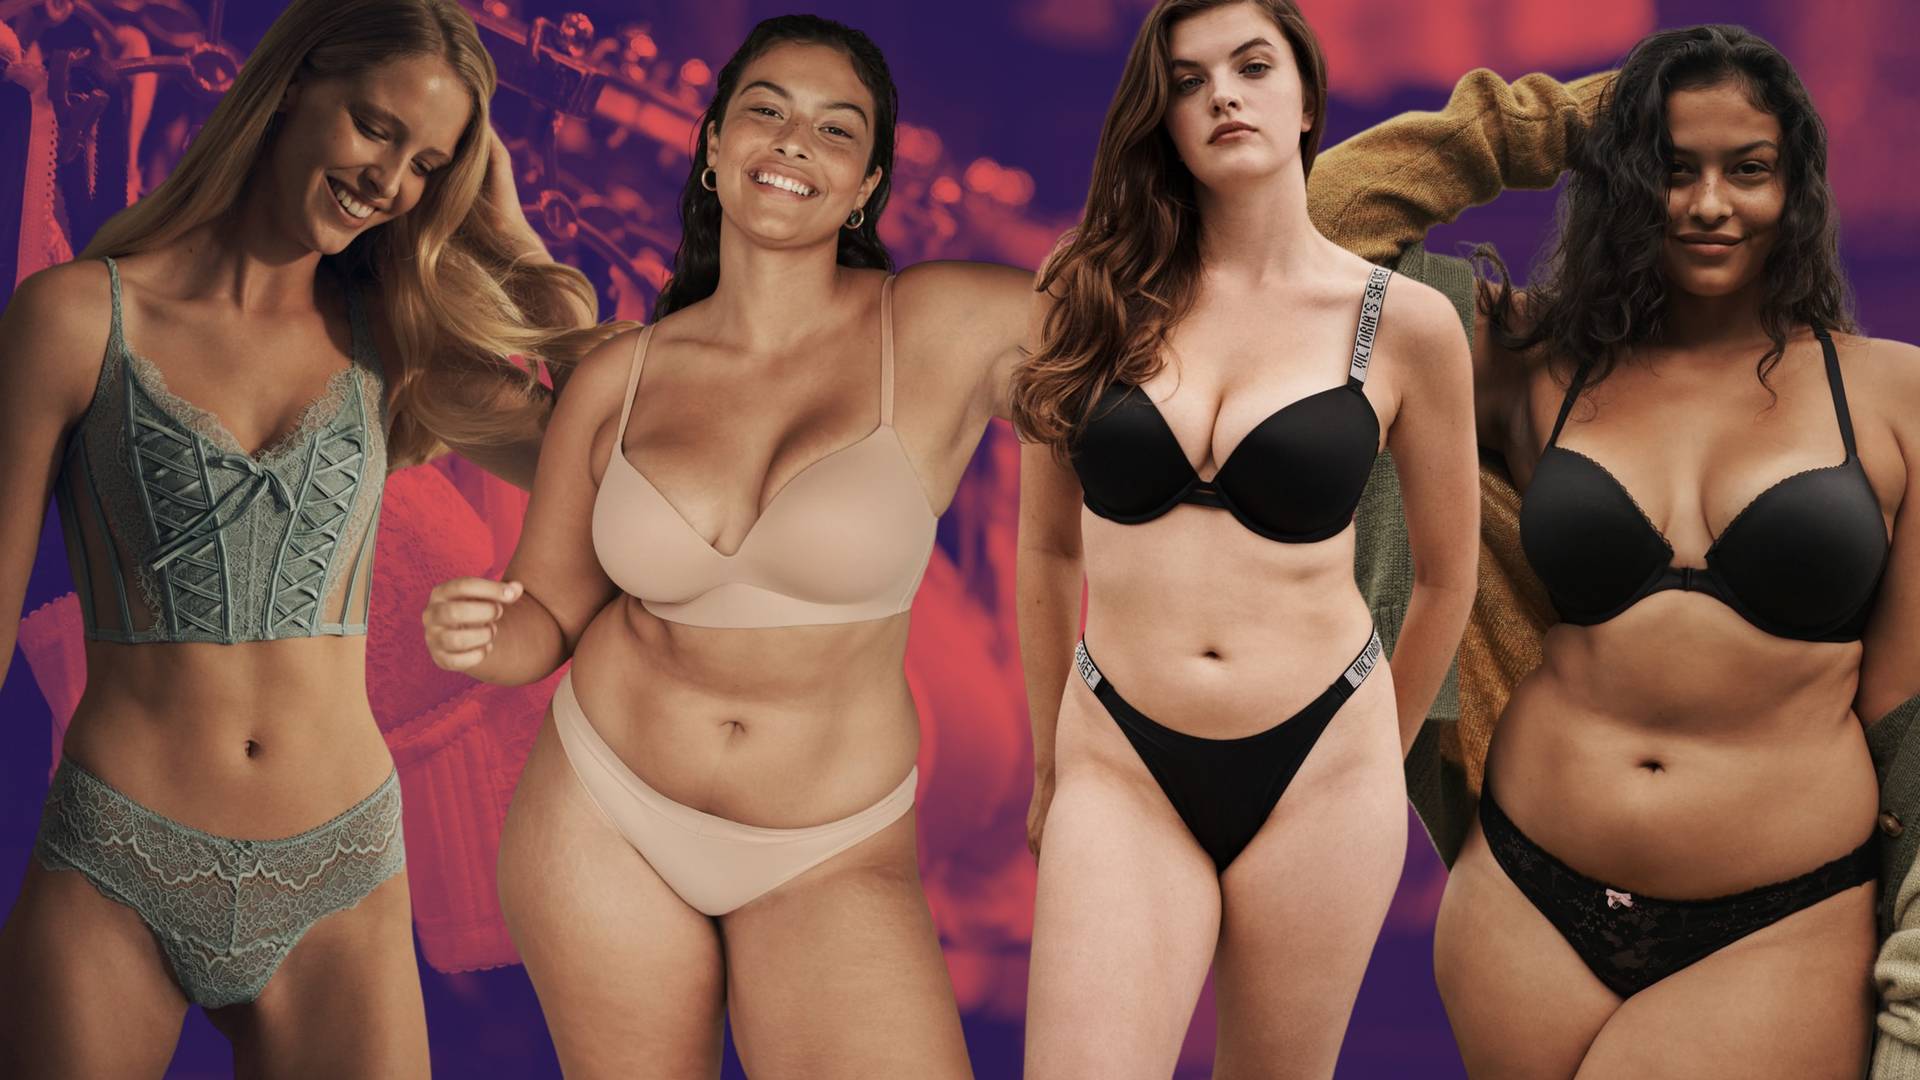 Nowa kolekcja Victoria's Secret pokazuje Aniołki 2.0 - współczesny ideał kobiecego ciała